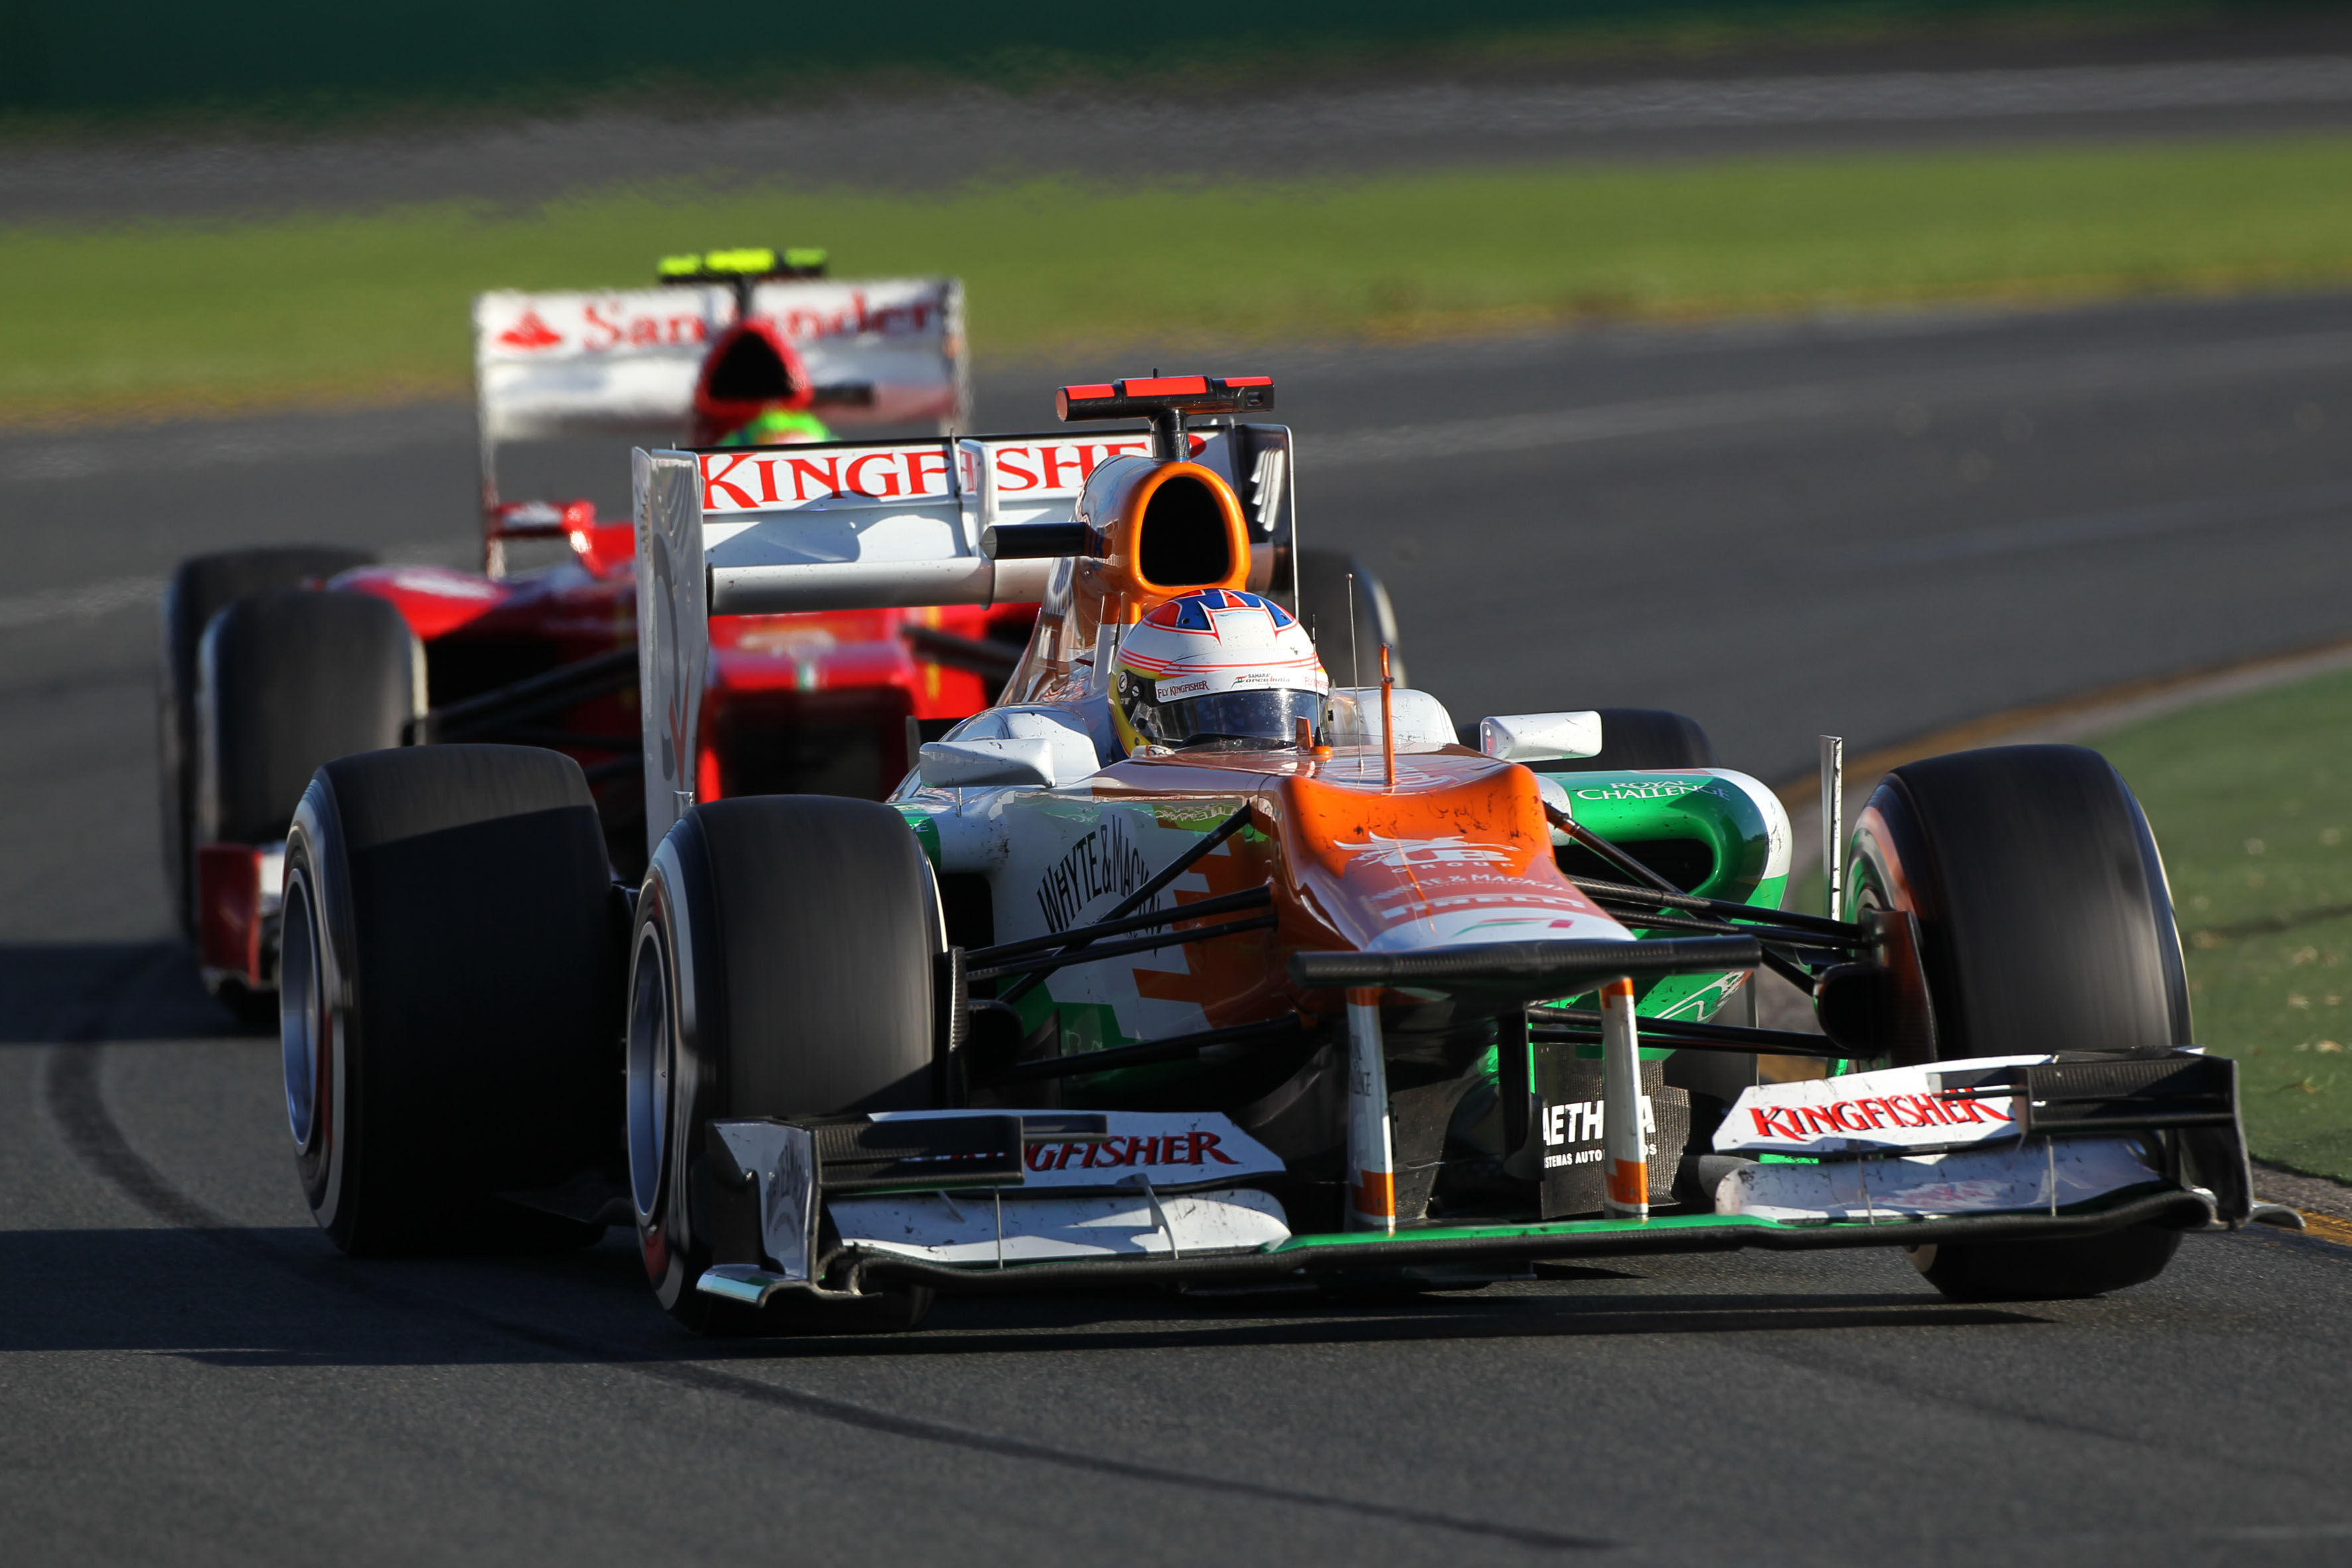 Force India zet in op beter tempo en meer punten